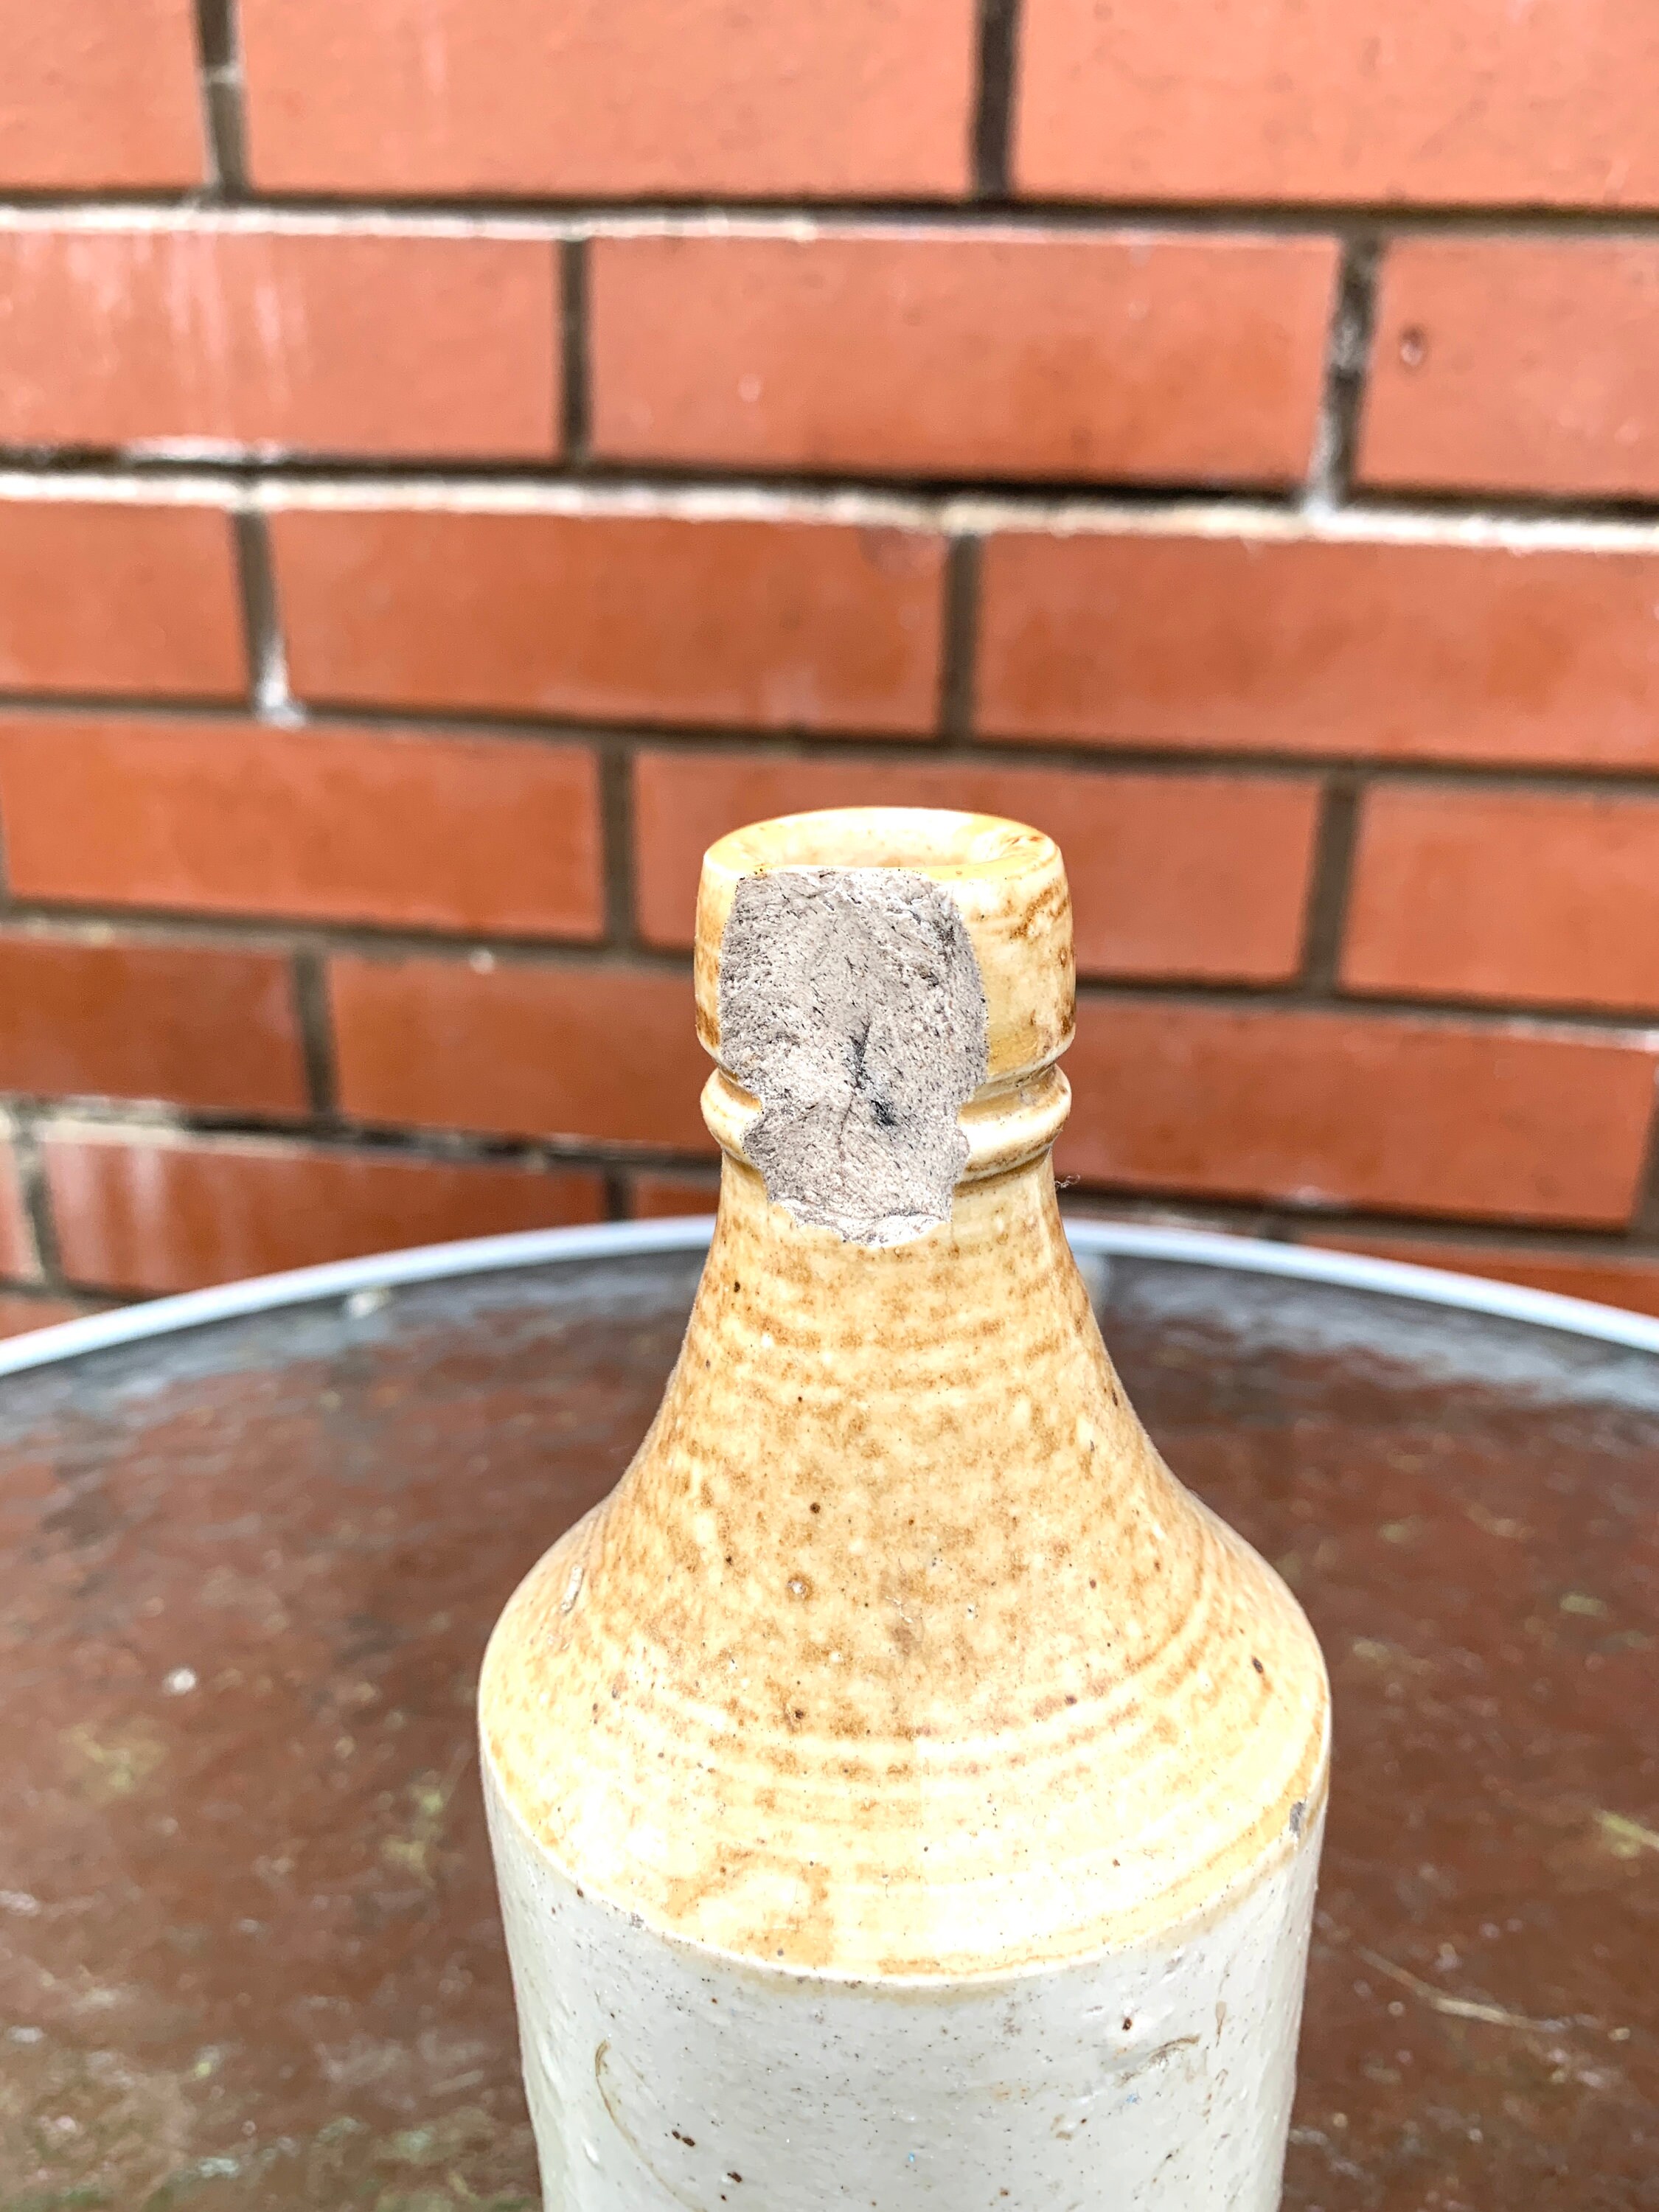 Victorian stoneware Portobello ginger beer edinburgh found mudlarking scotland